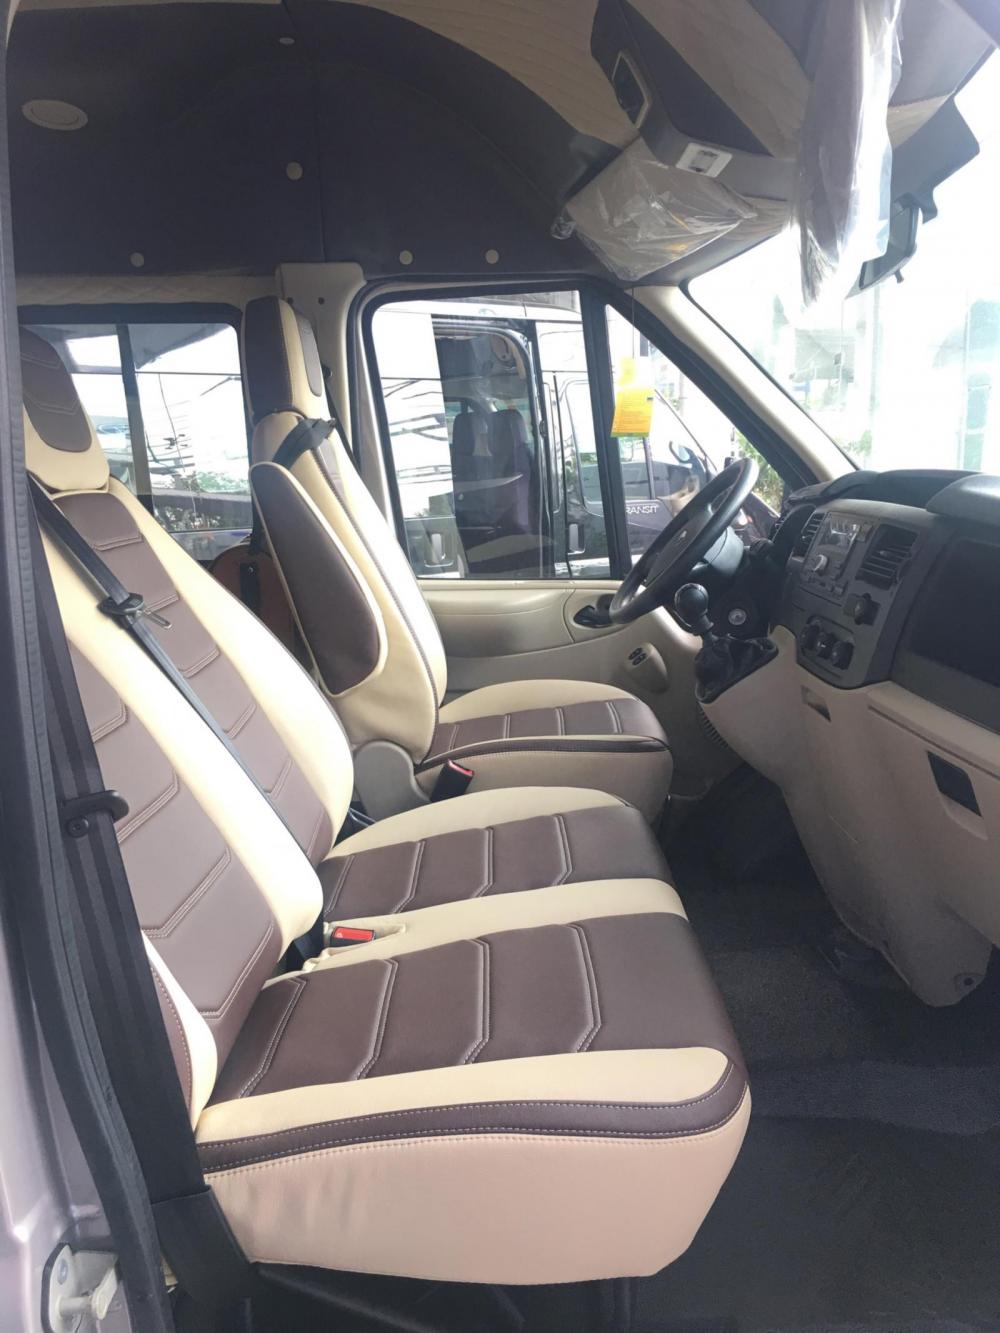 Ford Transit Luxury 2018 - Ford Transit 2018 trả góp 150tr giao xe, chạy số cuối năm, tặng bảo hiểm, tặng phụ kiện, giảm giá xe, LH: 0931.252.839